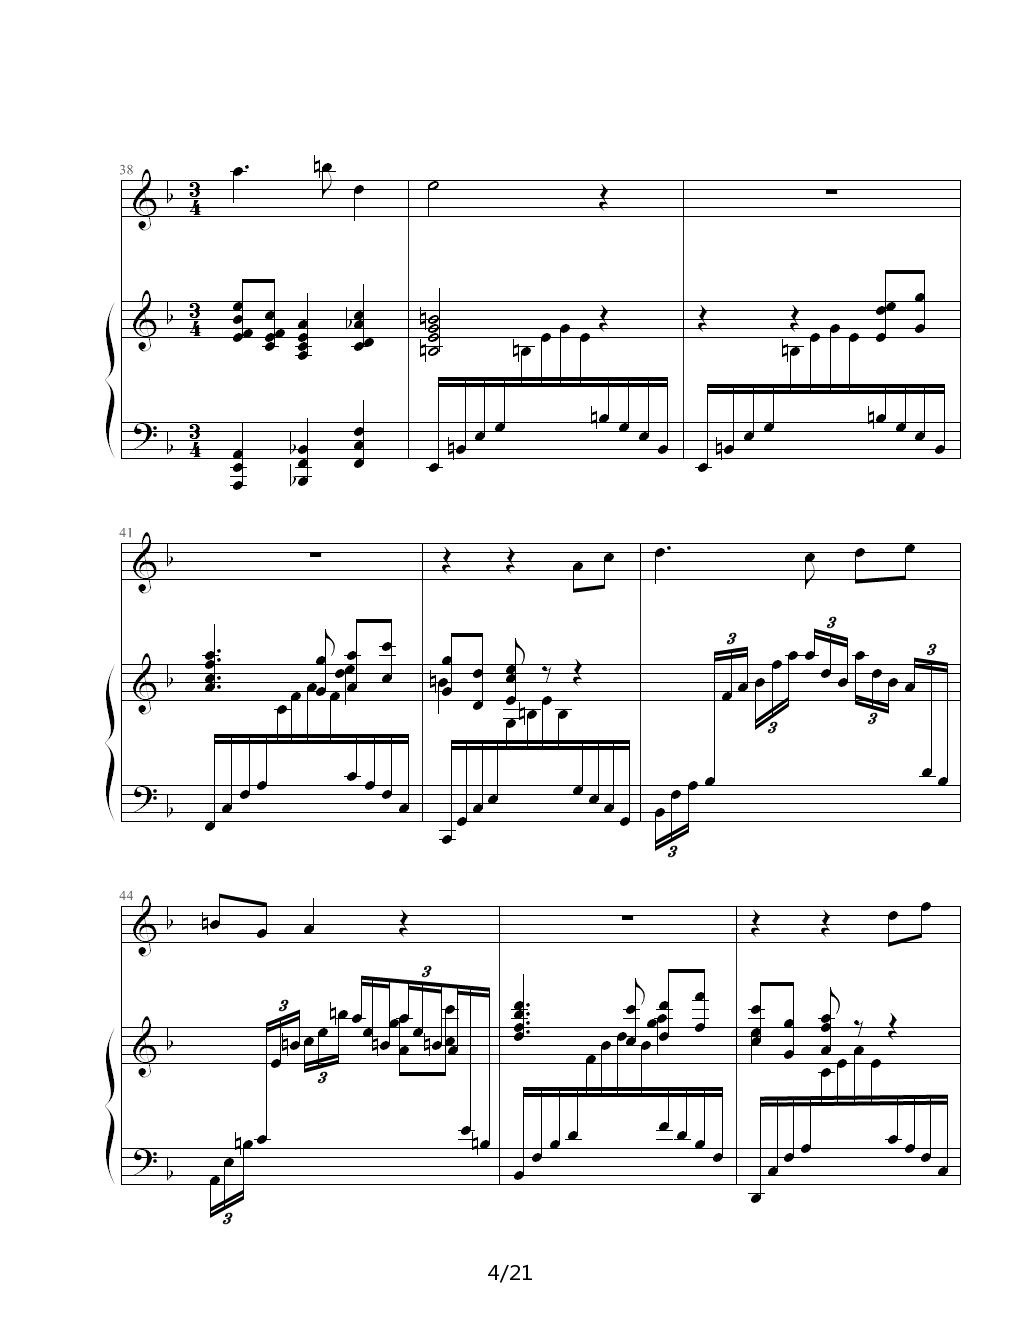 Sonata For Flute and Piano钢琴谱|Sonata For Flute and Piano最新钢琴谱|Sonata For Flute and Piano钢琴谱下载